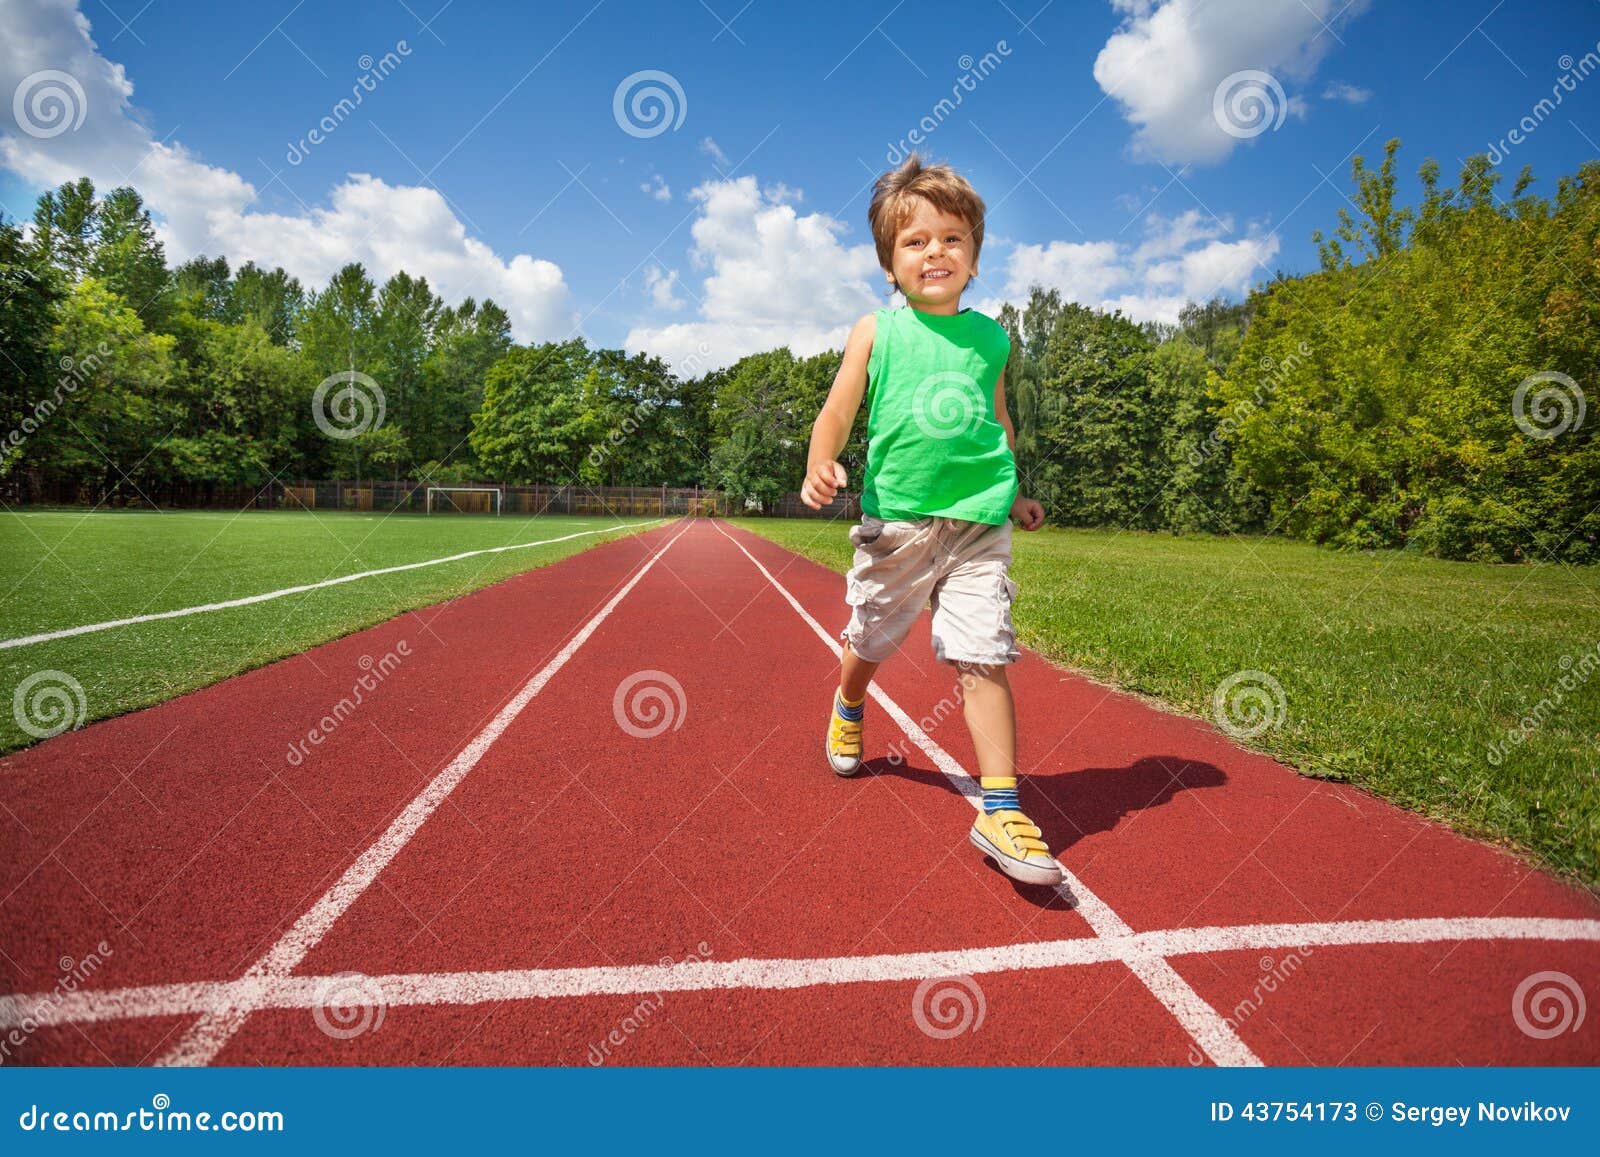 Подорожка приложение. Мальчик бежит. Бег по дорожке. Спорт дорожки для детей. Дети бегут по дорожке.